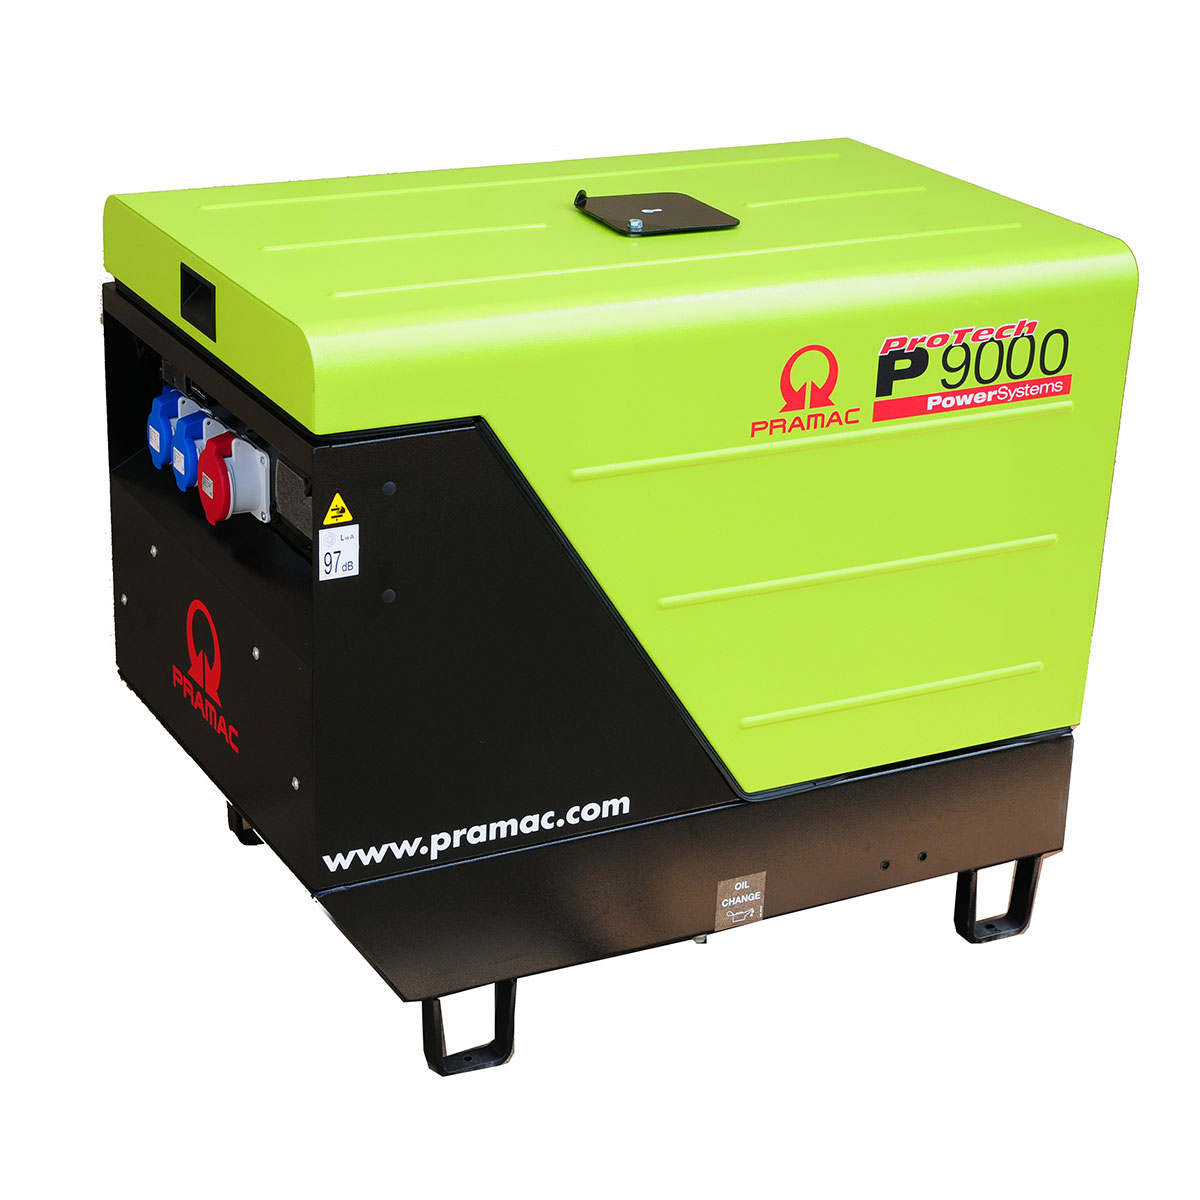 Pramac P9000 Silent Diesel Generator 3-Phase